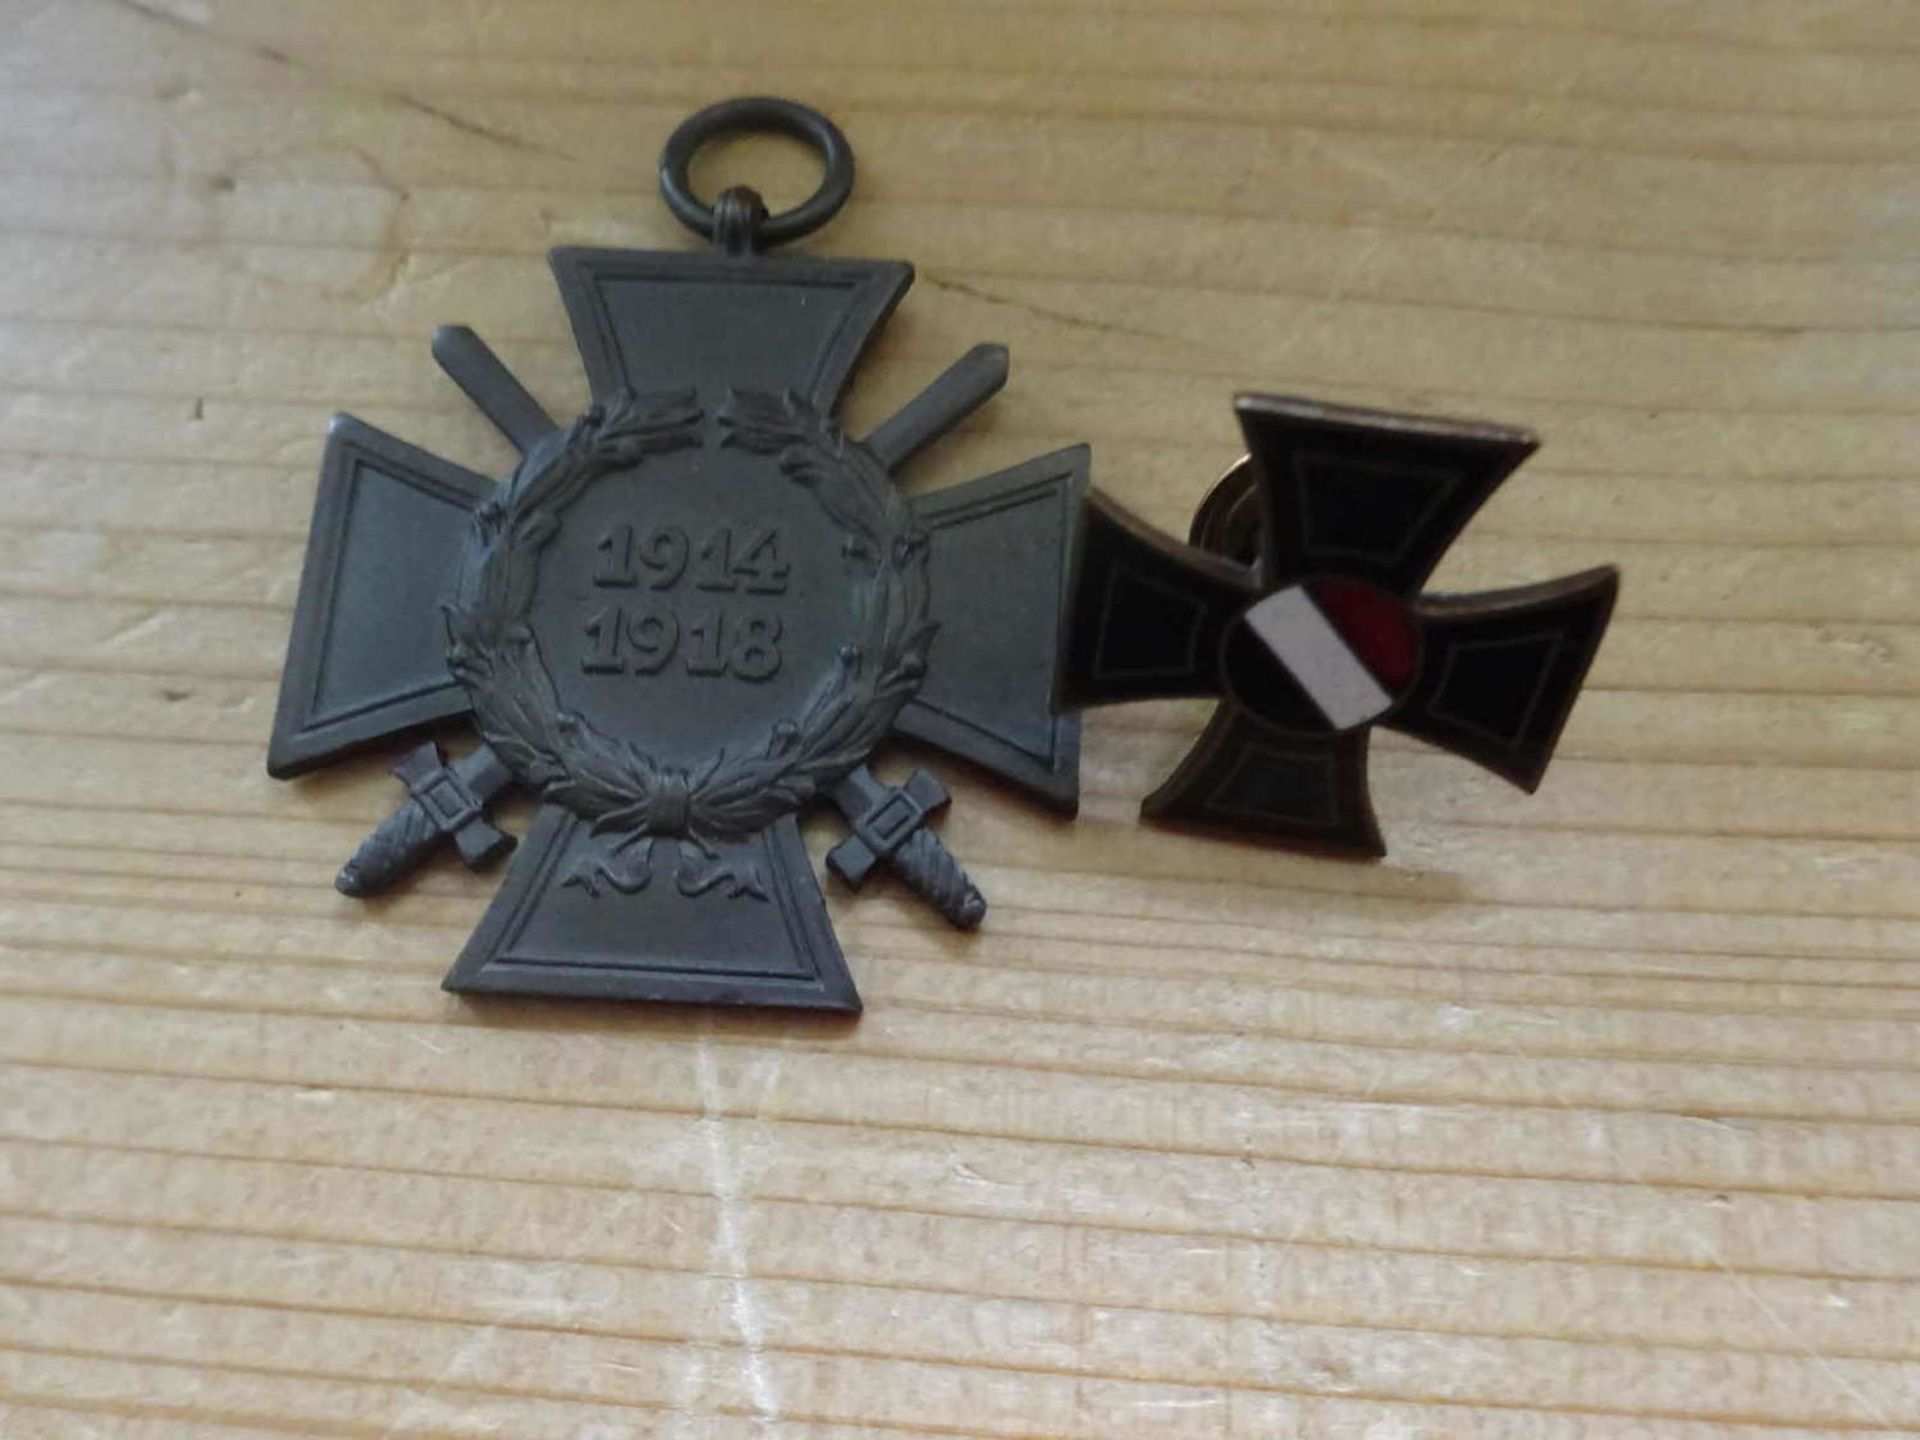 2 Teile Militaria, 1x Ehrenkreuz für Frontkämpfer 1914-1918, sowie 1 Pin Eisernes Kreuz2 parts